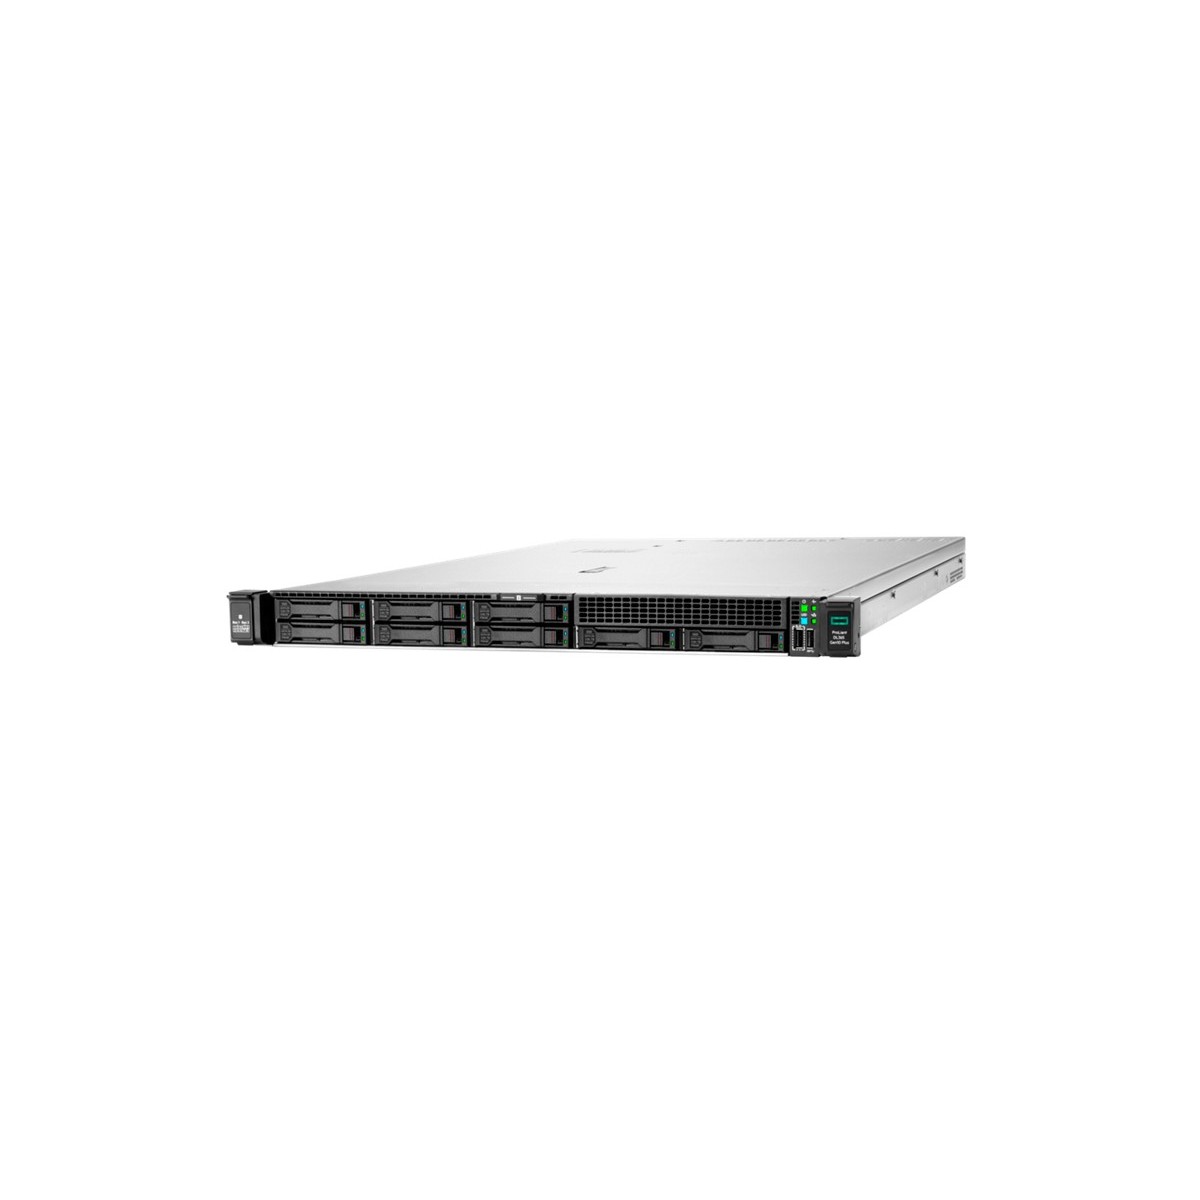 HPE DL365 Gen10+ 7262 1P 32G STOCK - Server - AMD EPYC